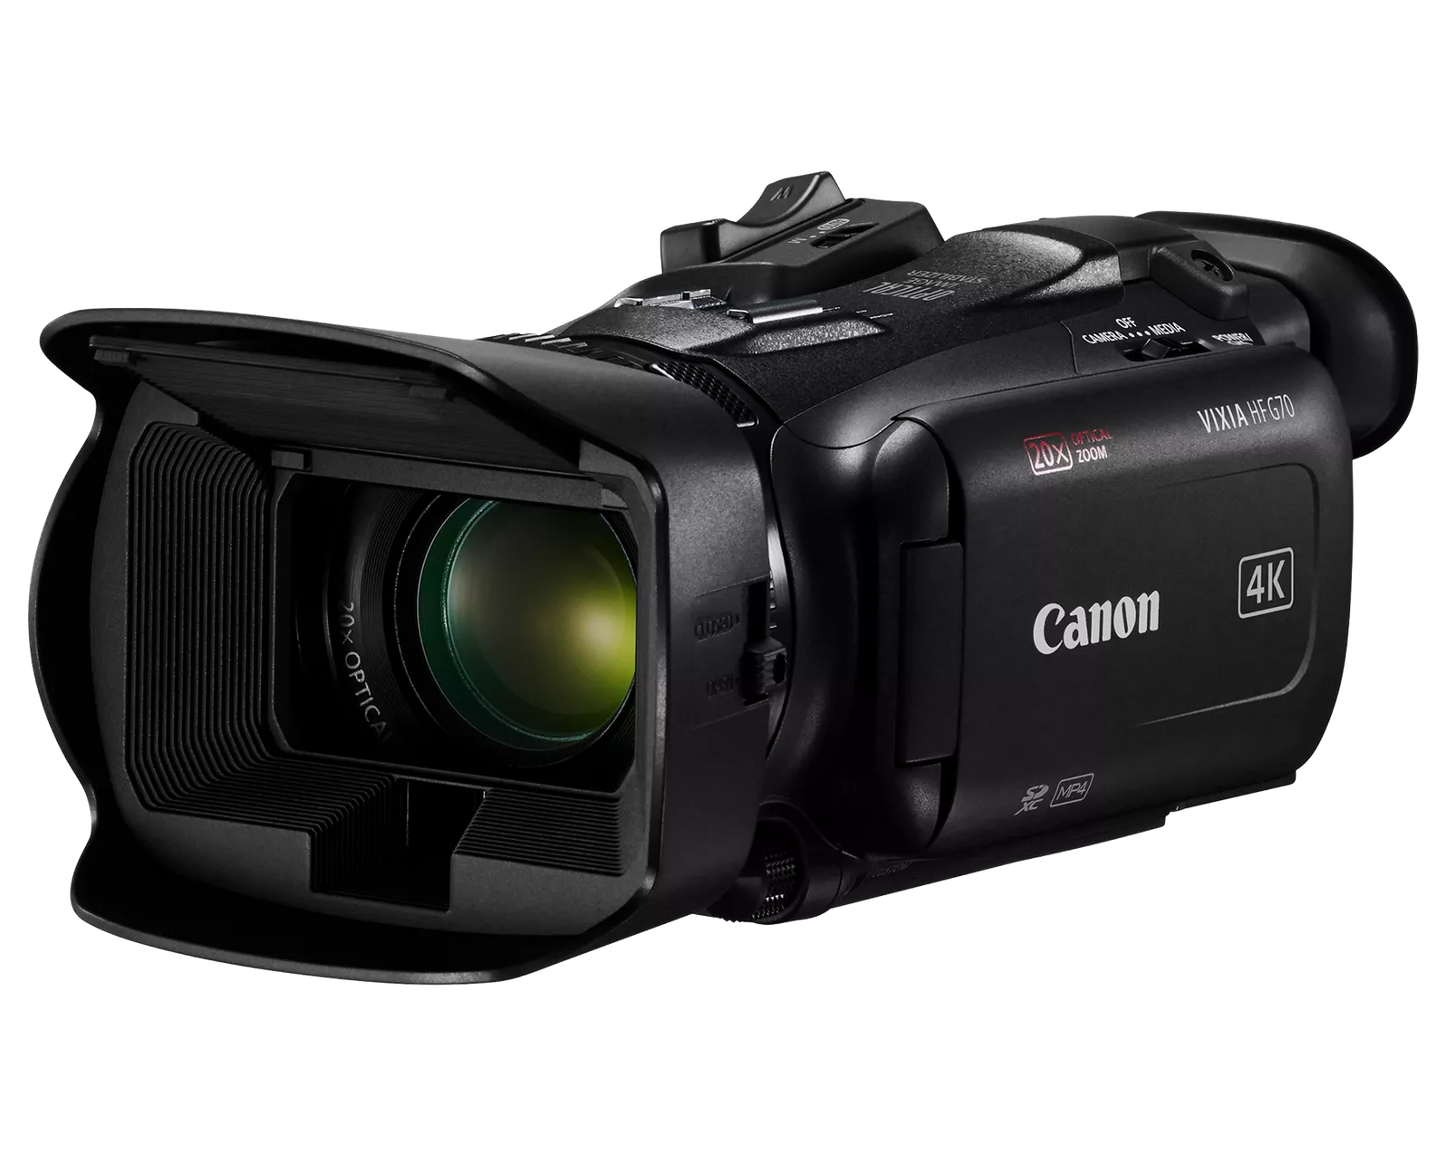 Canon Vixia HF G70 UHD 4K Camcorder